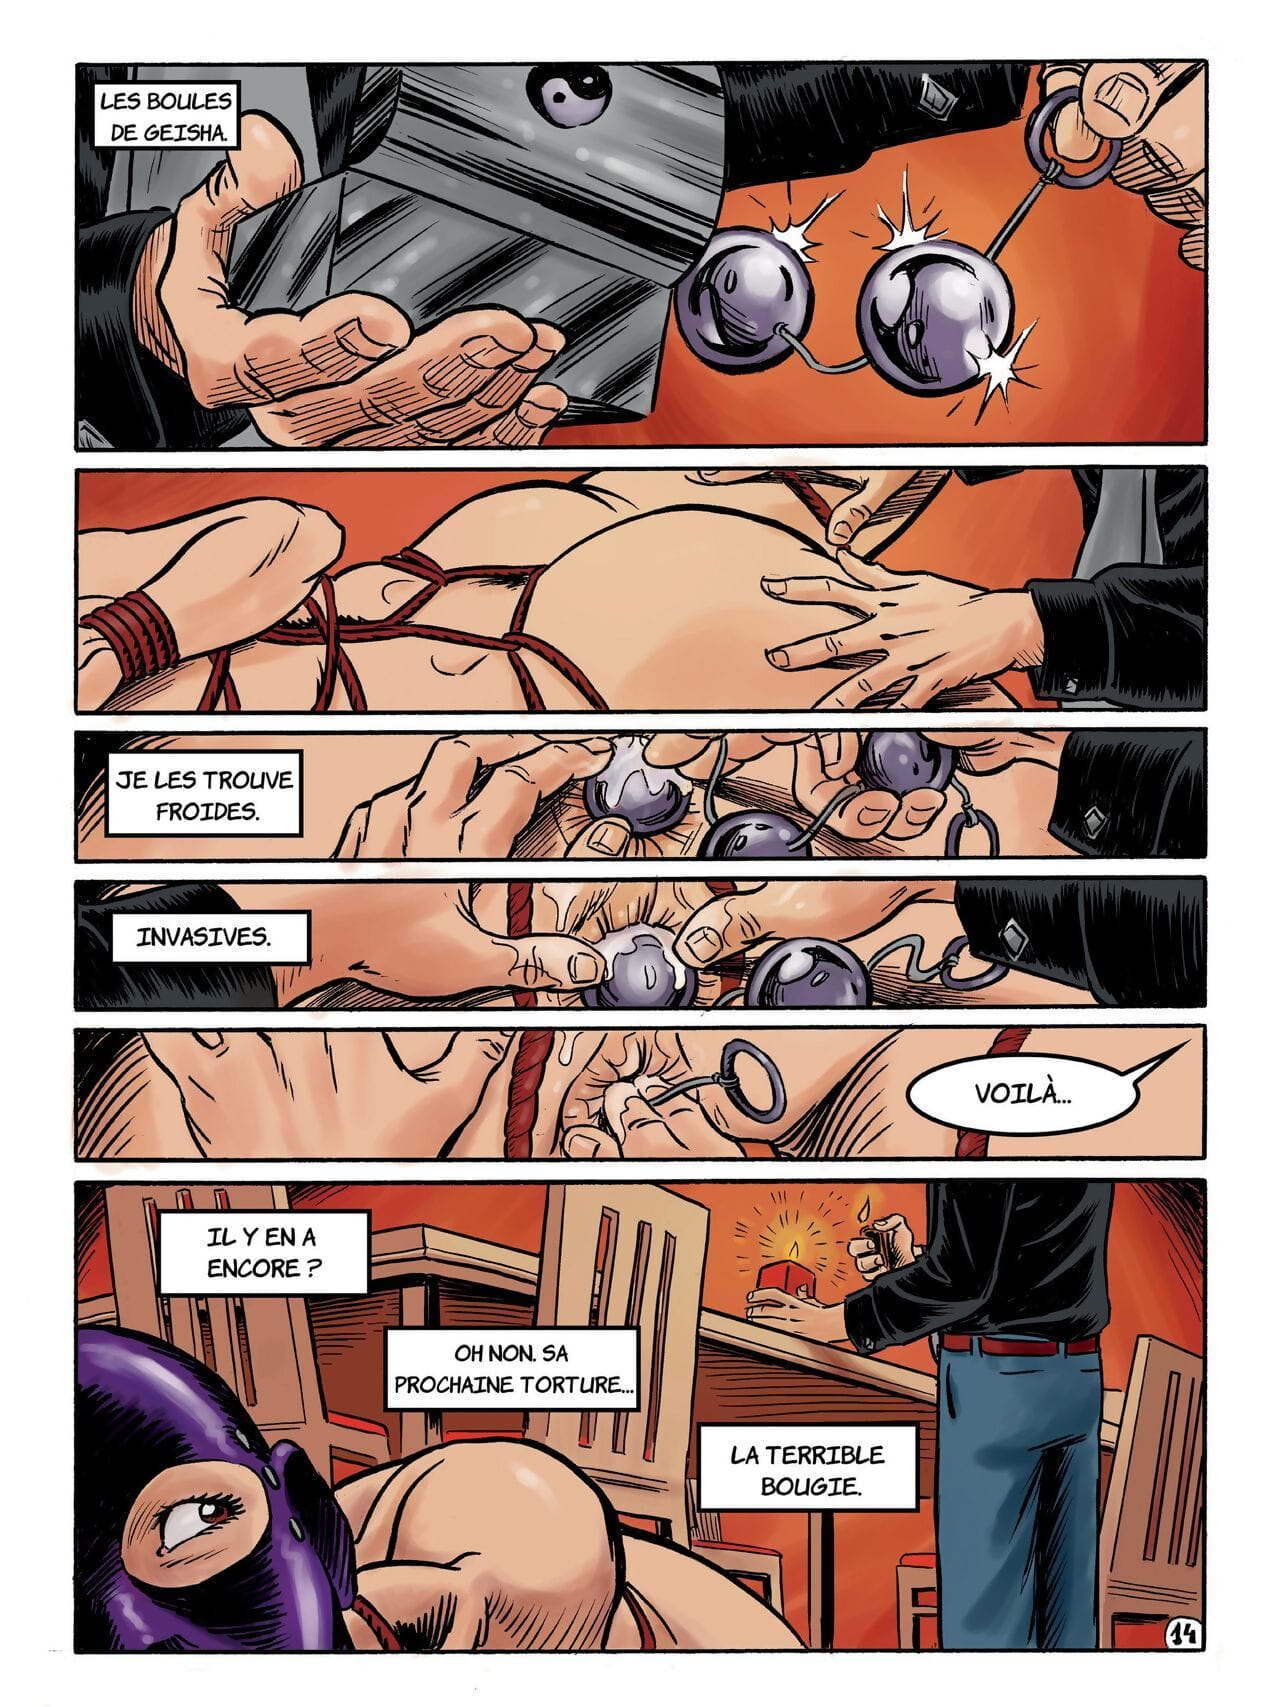 Kinky Slave #2 page 1